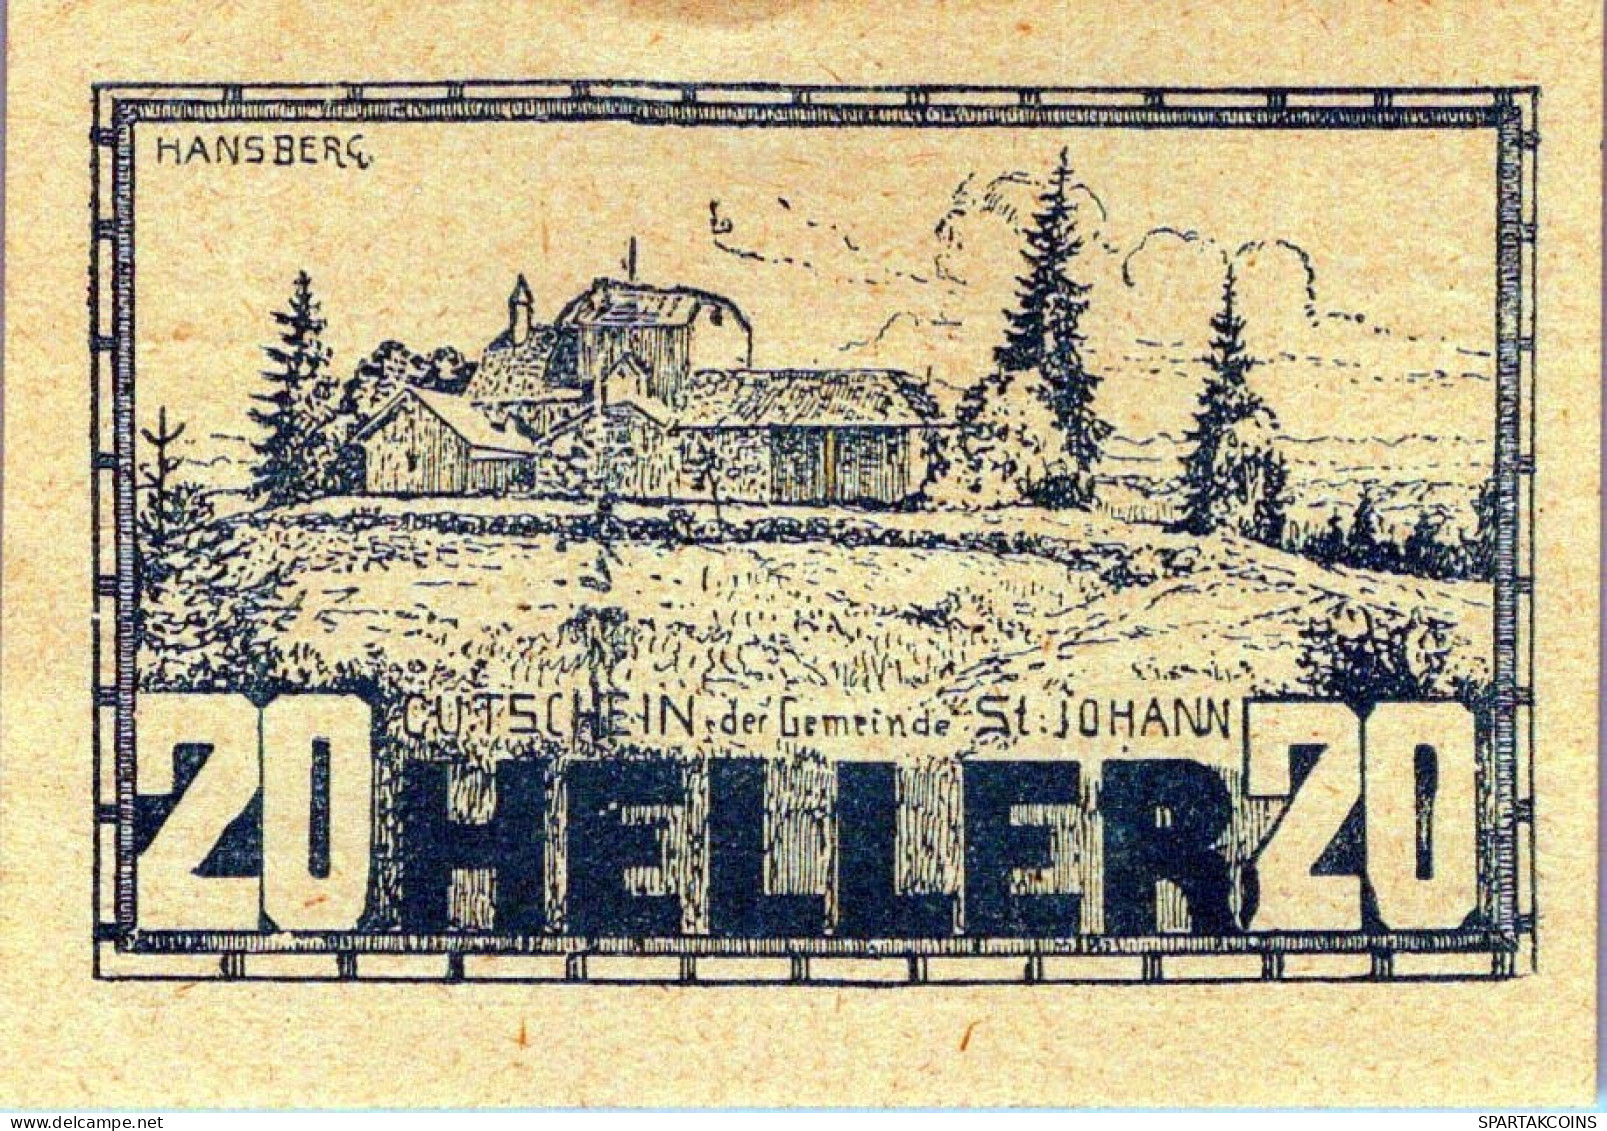 20 HELLER 1920 Stadt SANKT JOHANN AM WIMBERG Oberösterreich Österreich Notgeld Papiergeld Banknote #PG707 - [11] Emisiones Locales